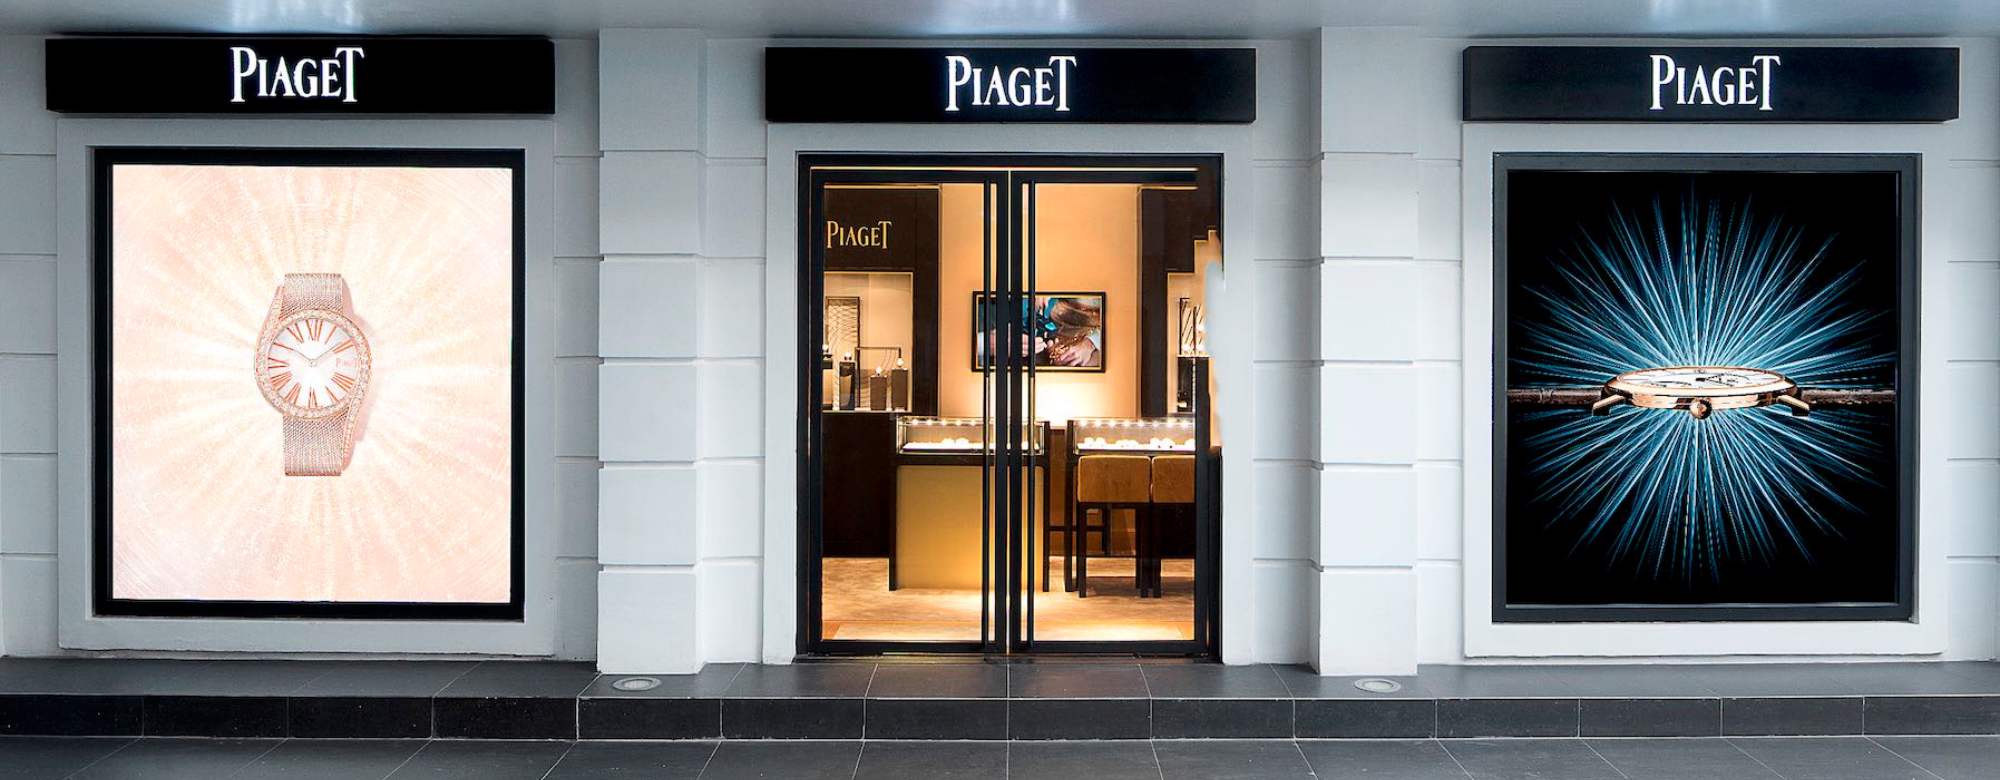 Piaget 9